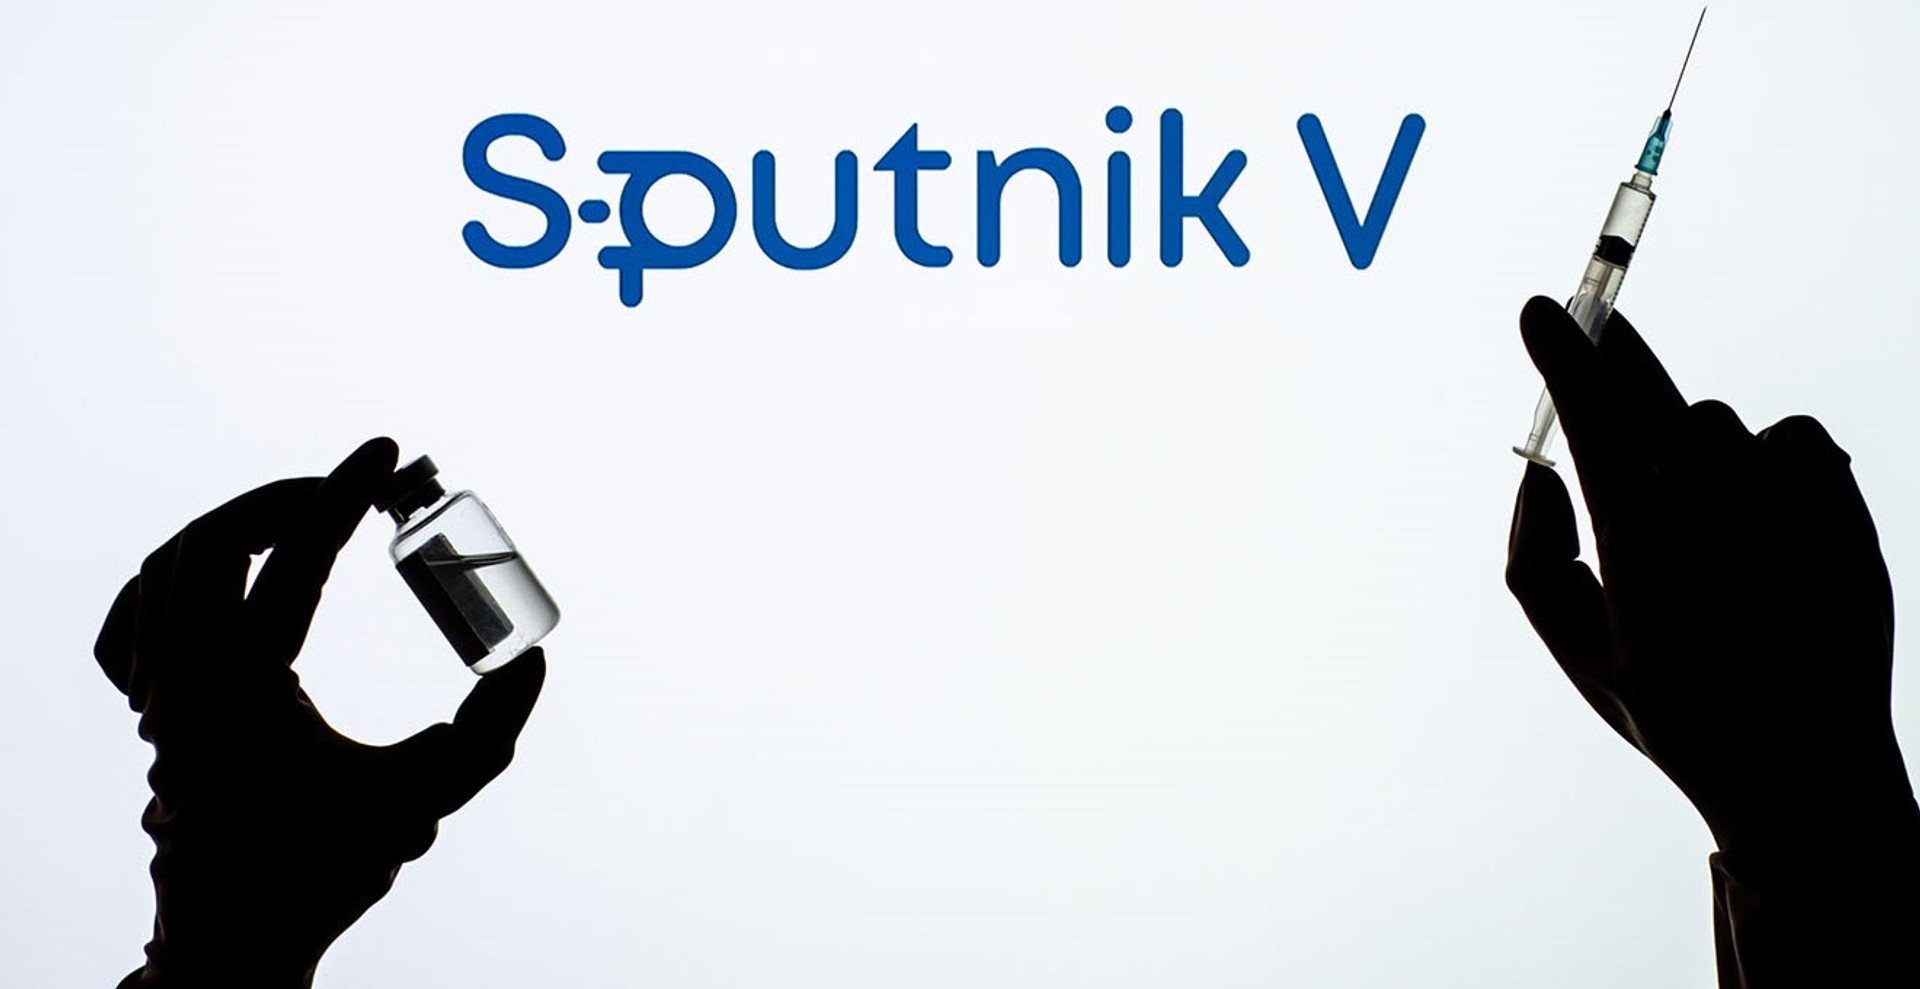 Російський Sputnik-V – виклик нацбезпеці та загроза життю українців